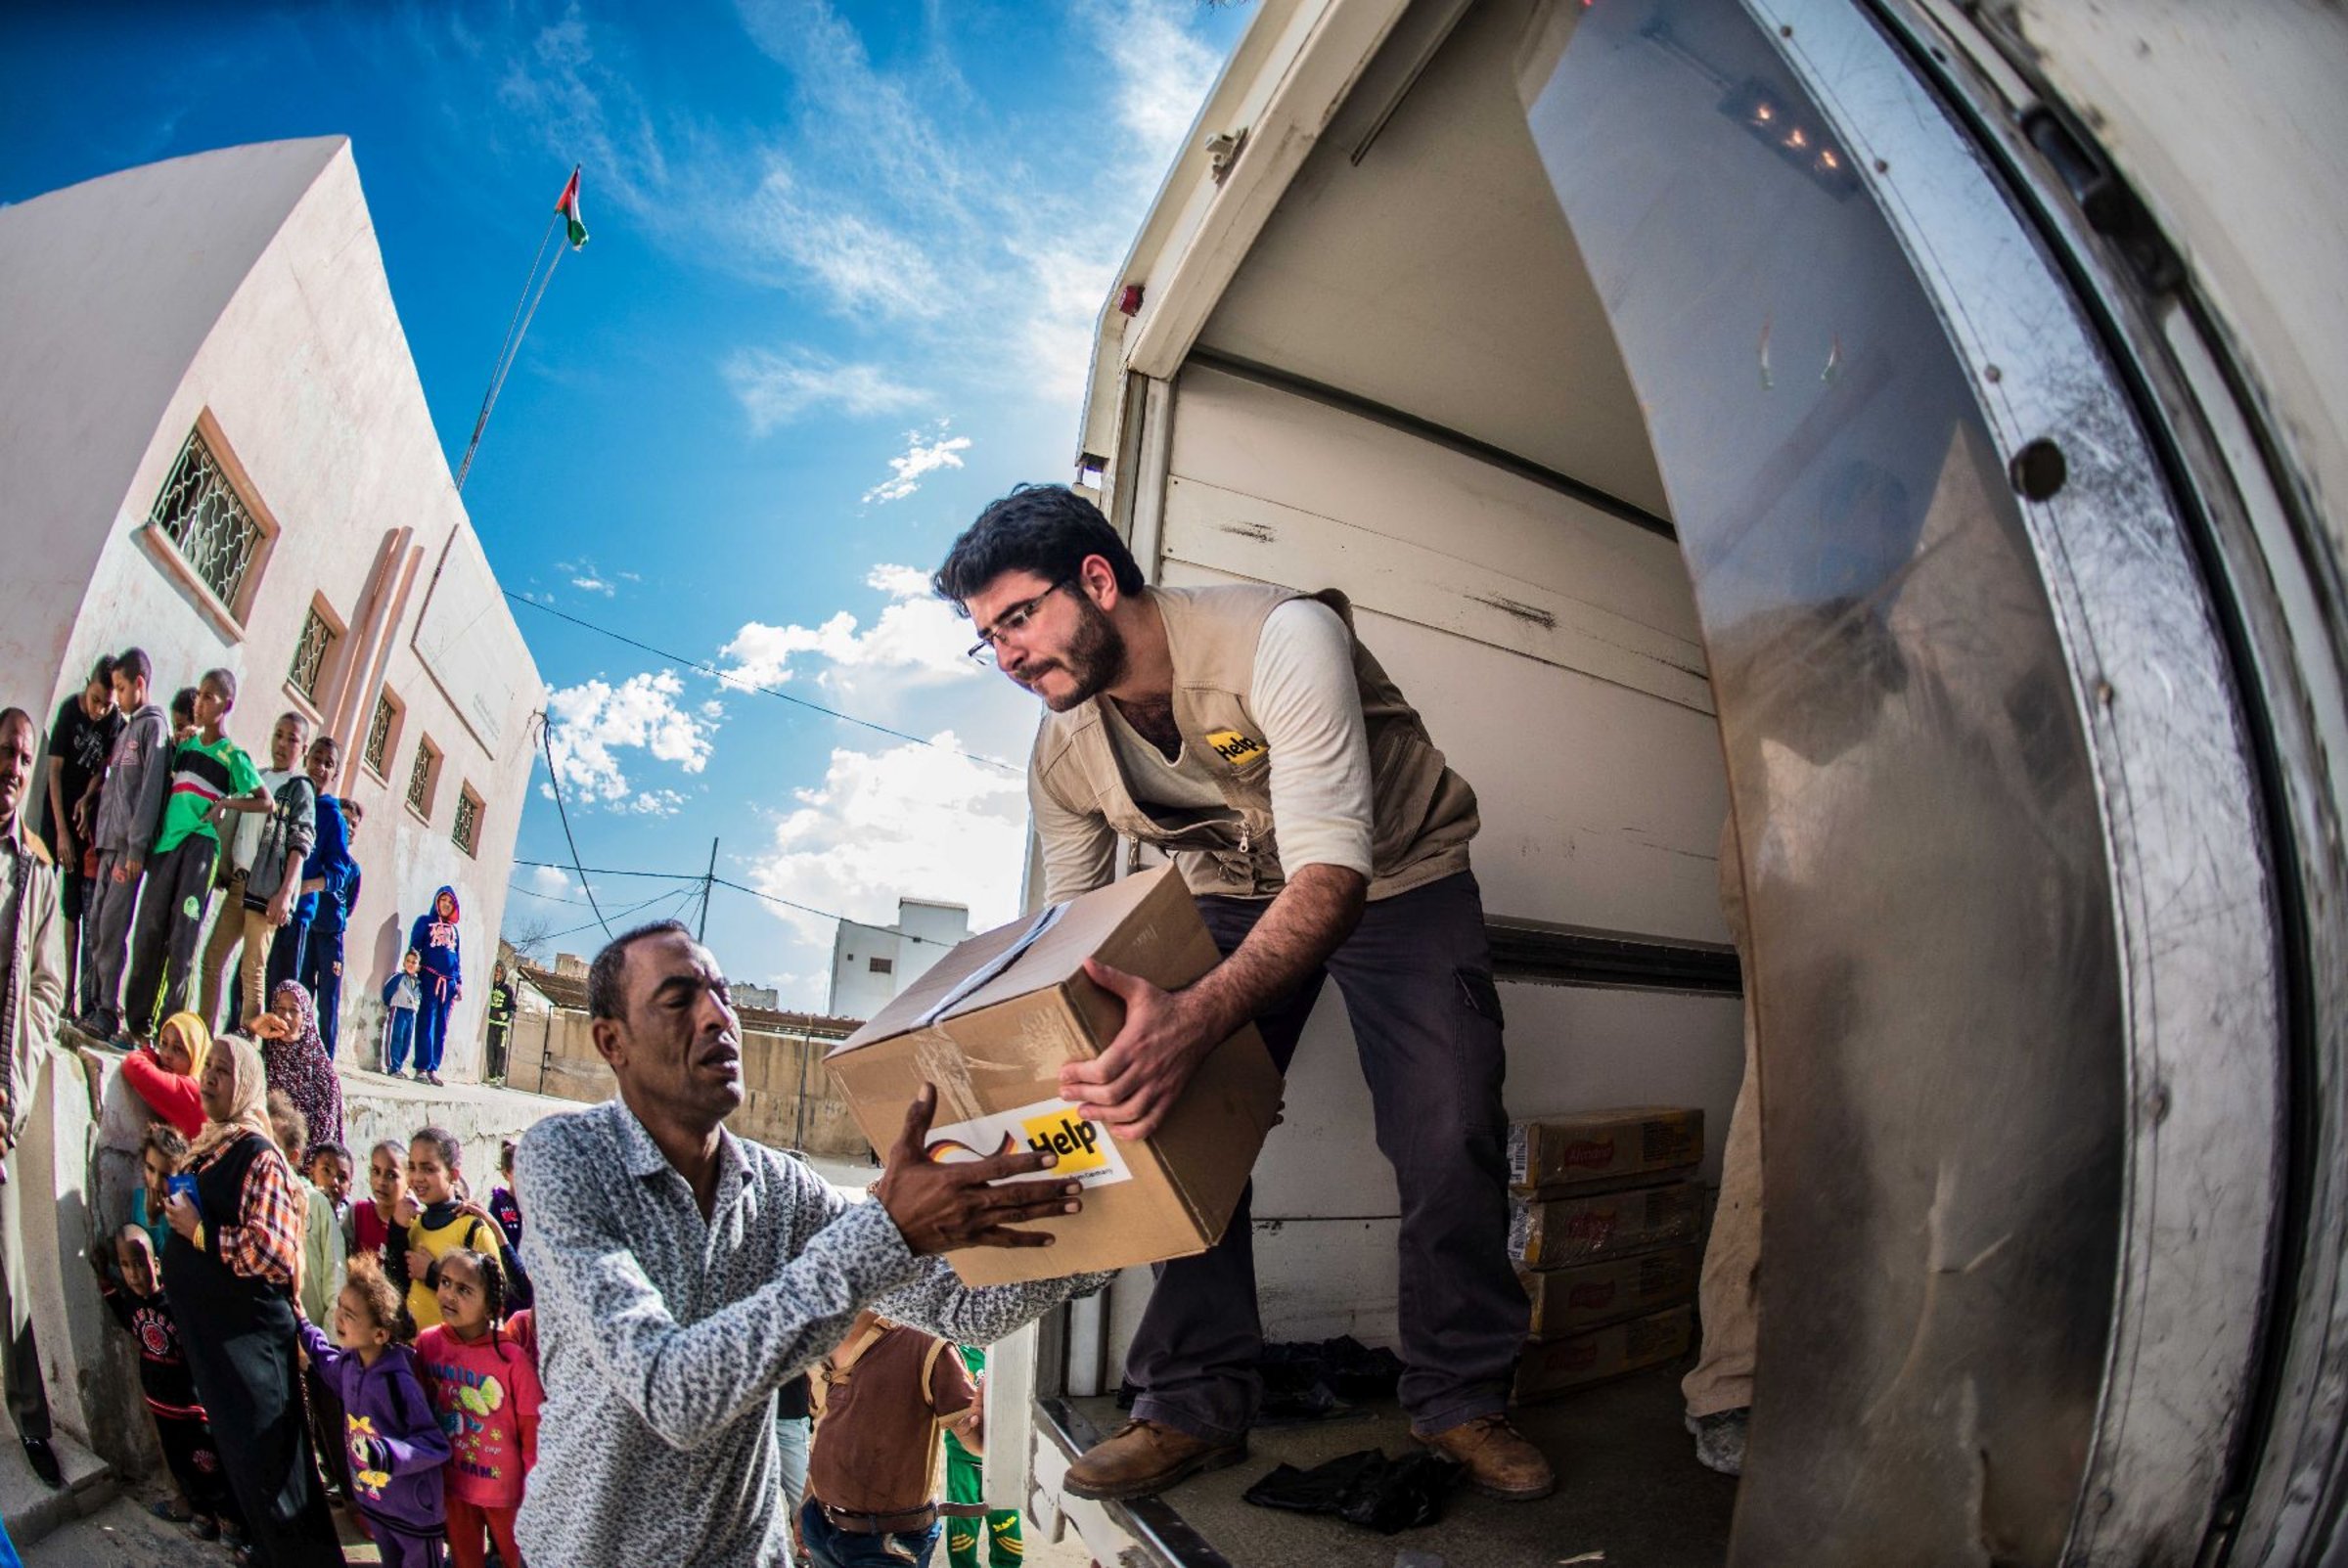 Hep Mitarbeiter verteilt Hilfspakete für syrische Flüchtlinge in Jordanien